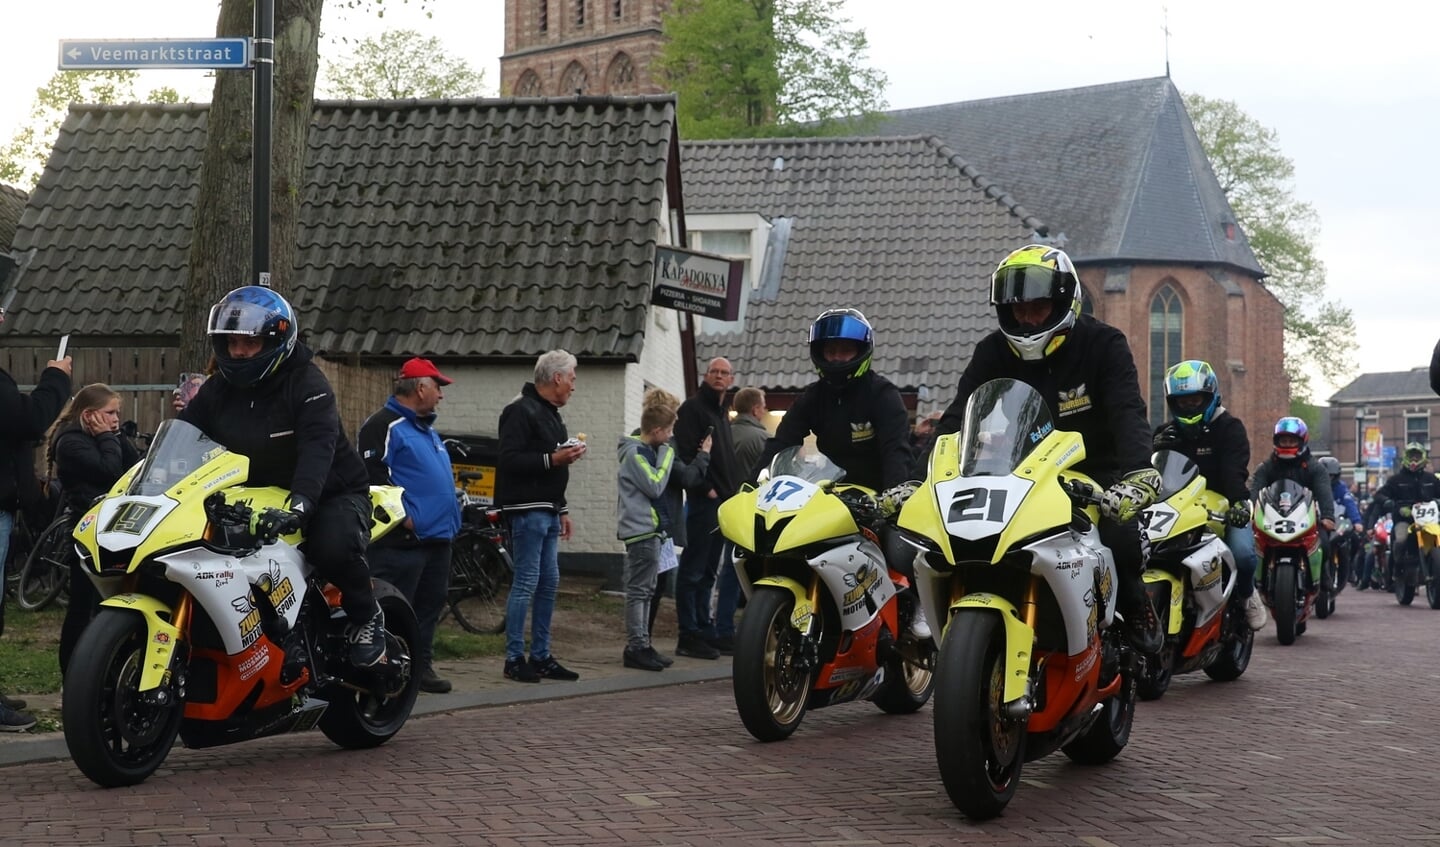 De rijdersparade in het centrum van Hengelo is de start van een weekend wegraces op De Varsselring. Foto: Albert Schreuder